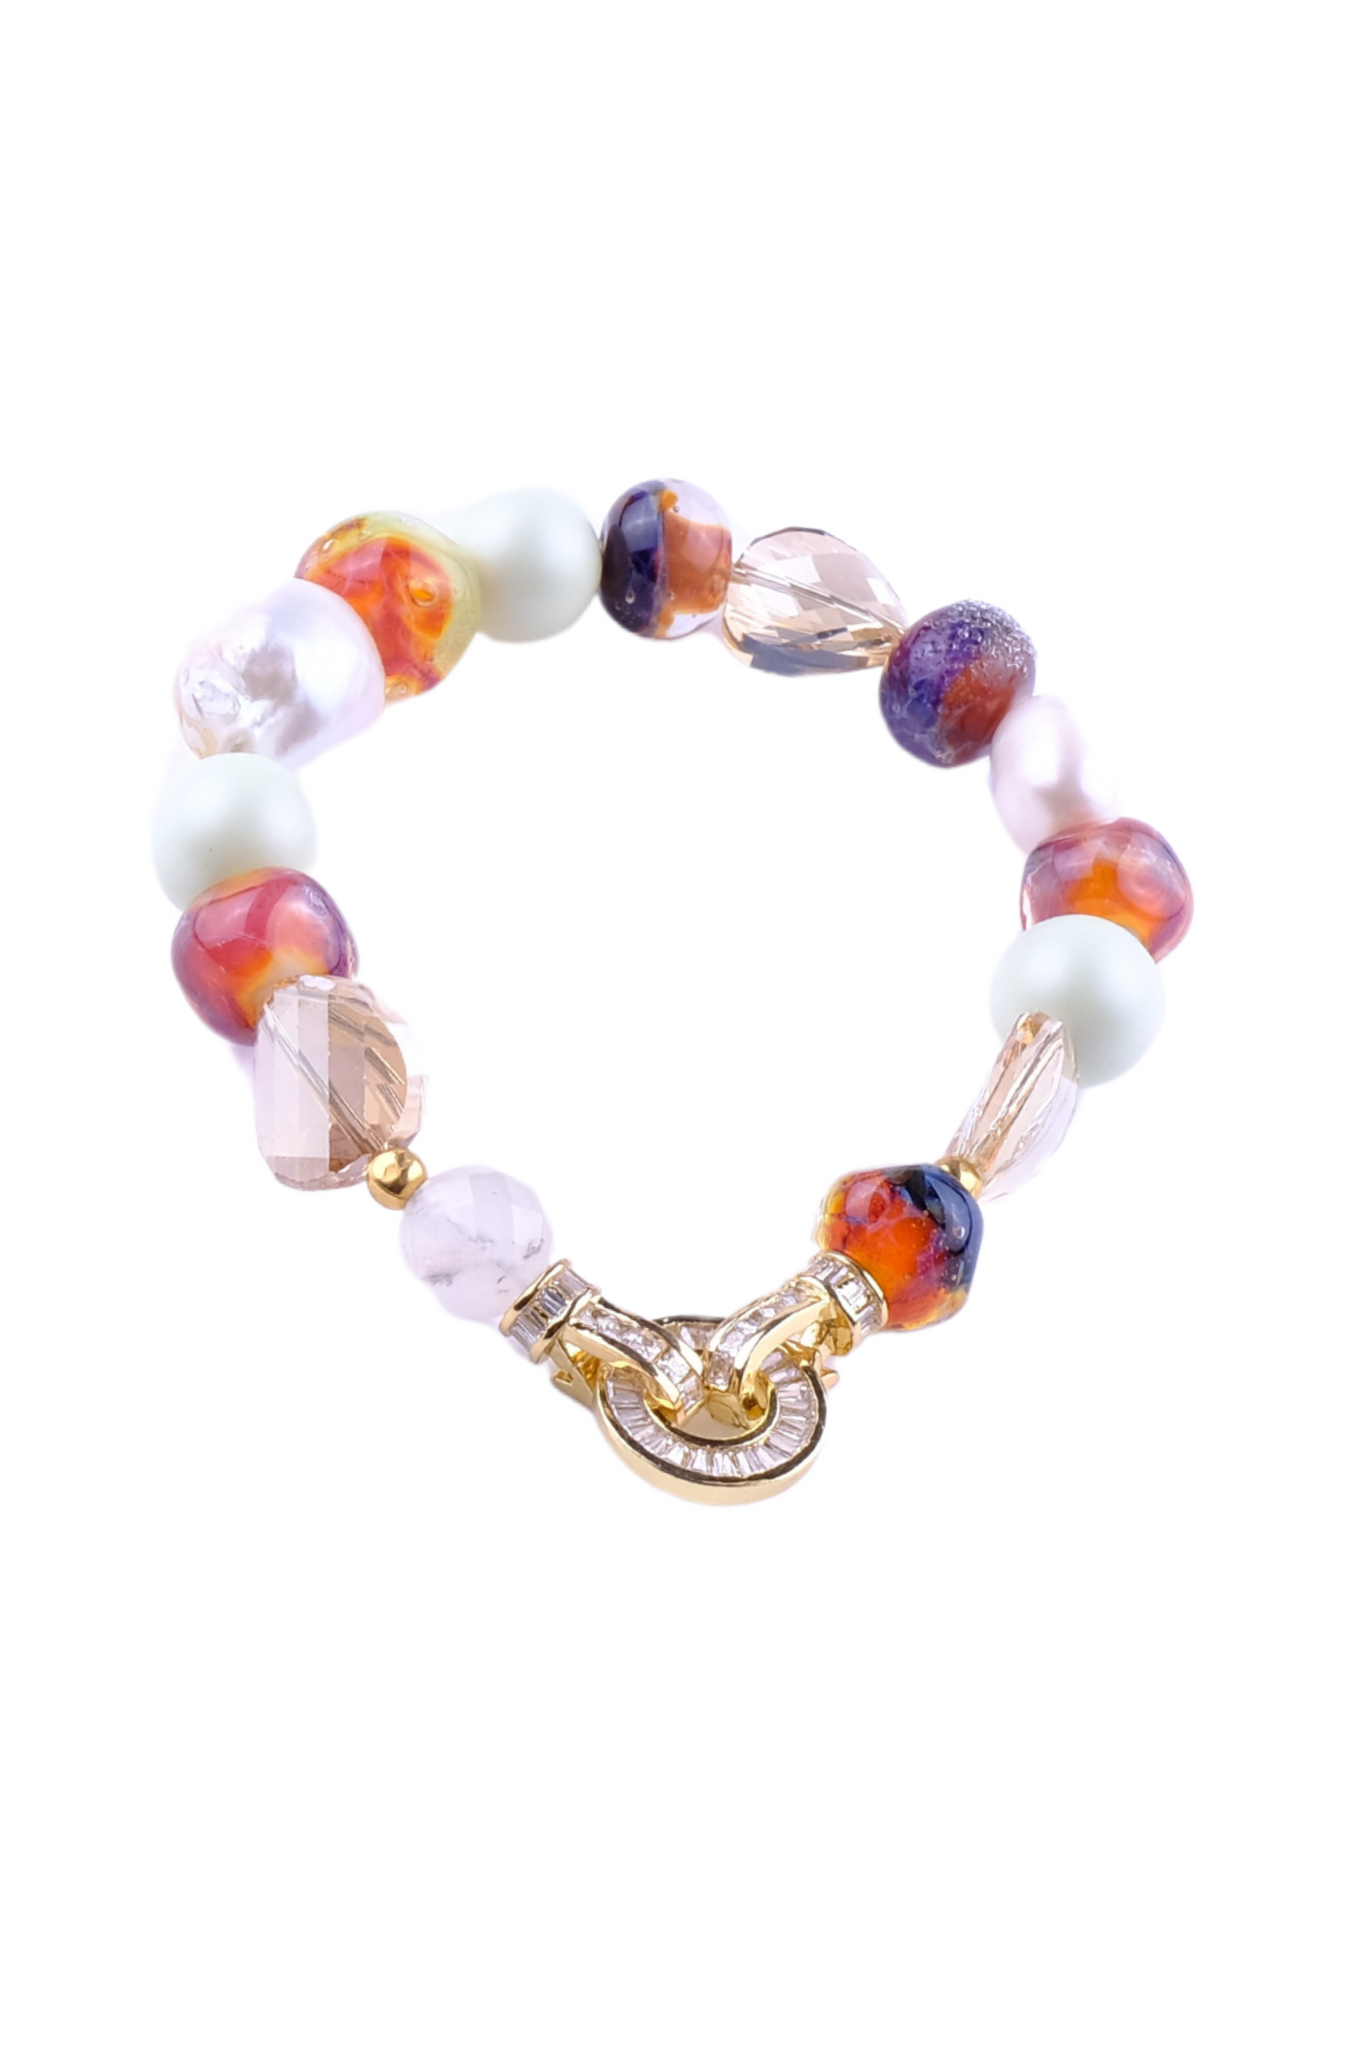 Billede af Unika armbånd af swarovski perler og krystaller, ferskvands perler og håndlavede glas perler i mint, hvid og brun farver